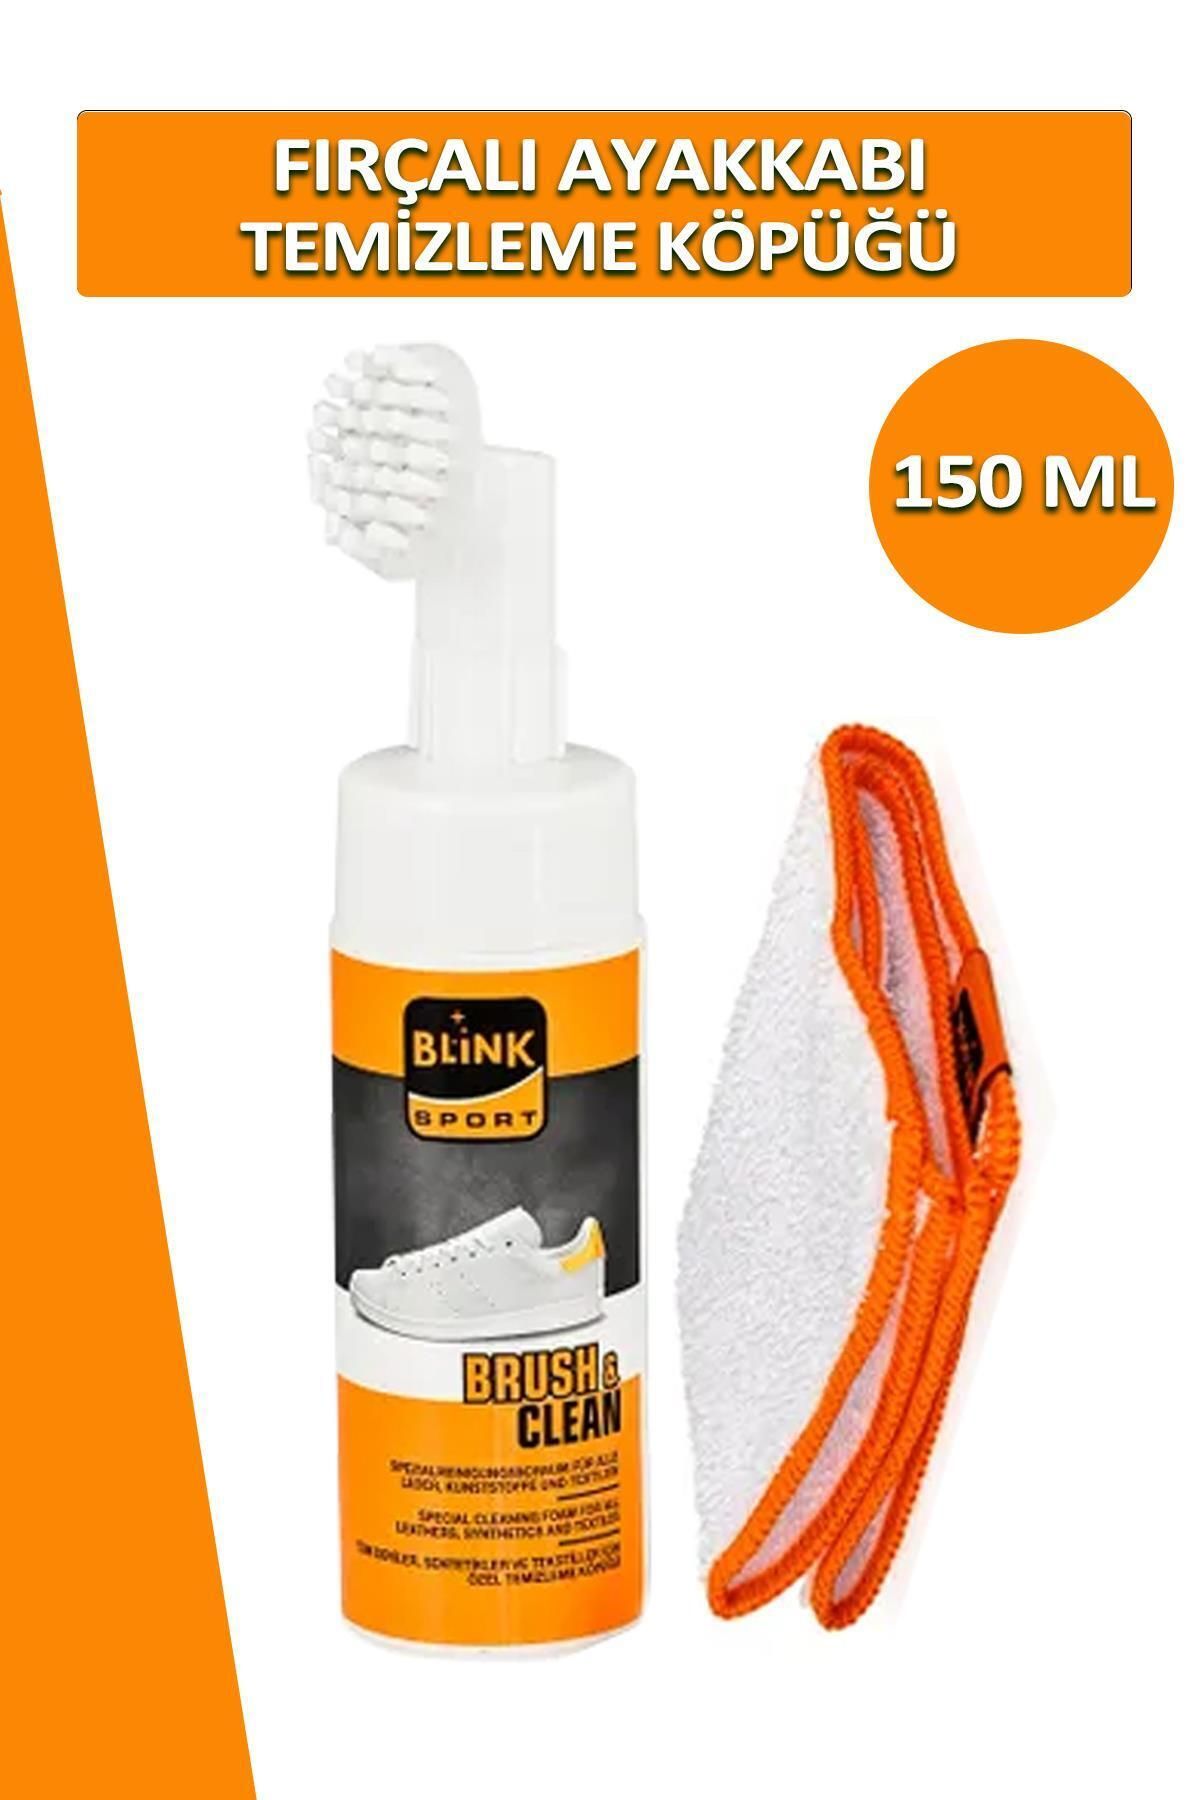 Blink Brush Clean Fırçalı Ayakkabı Bakım Temizleme Köpüğü 150 ML